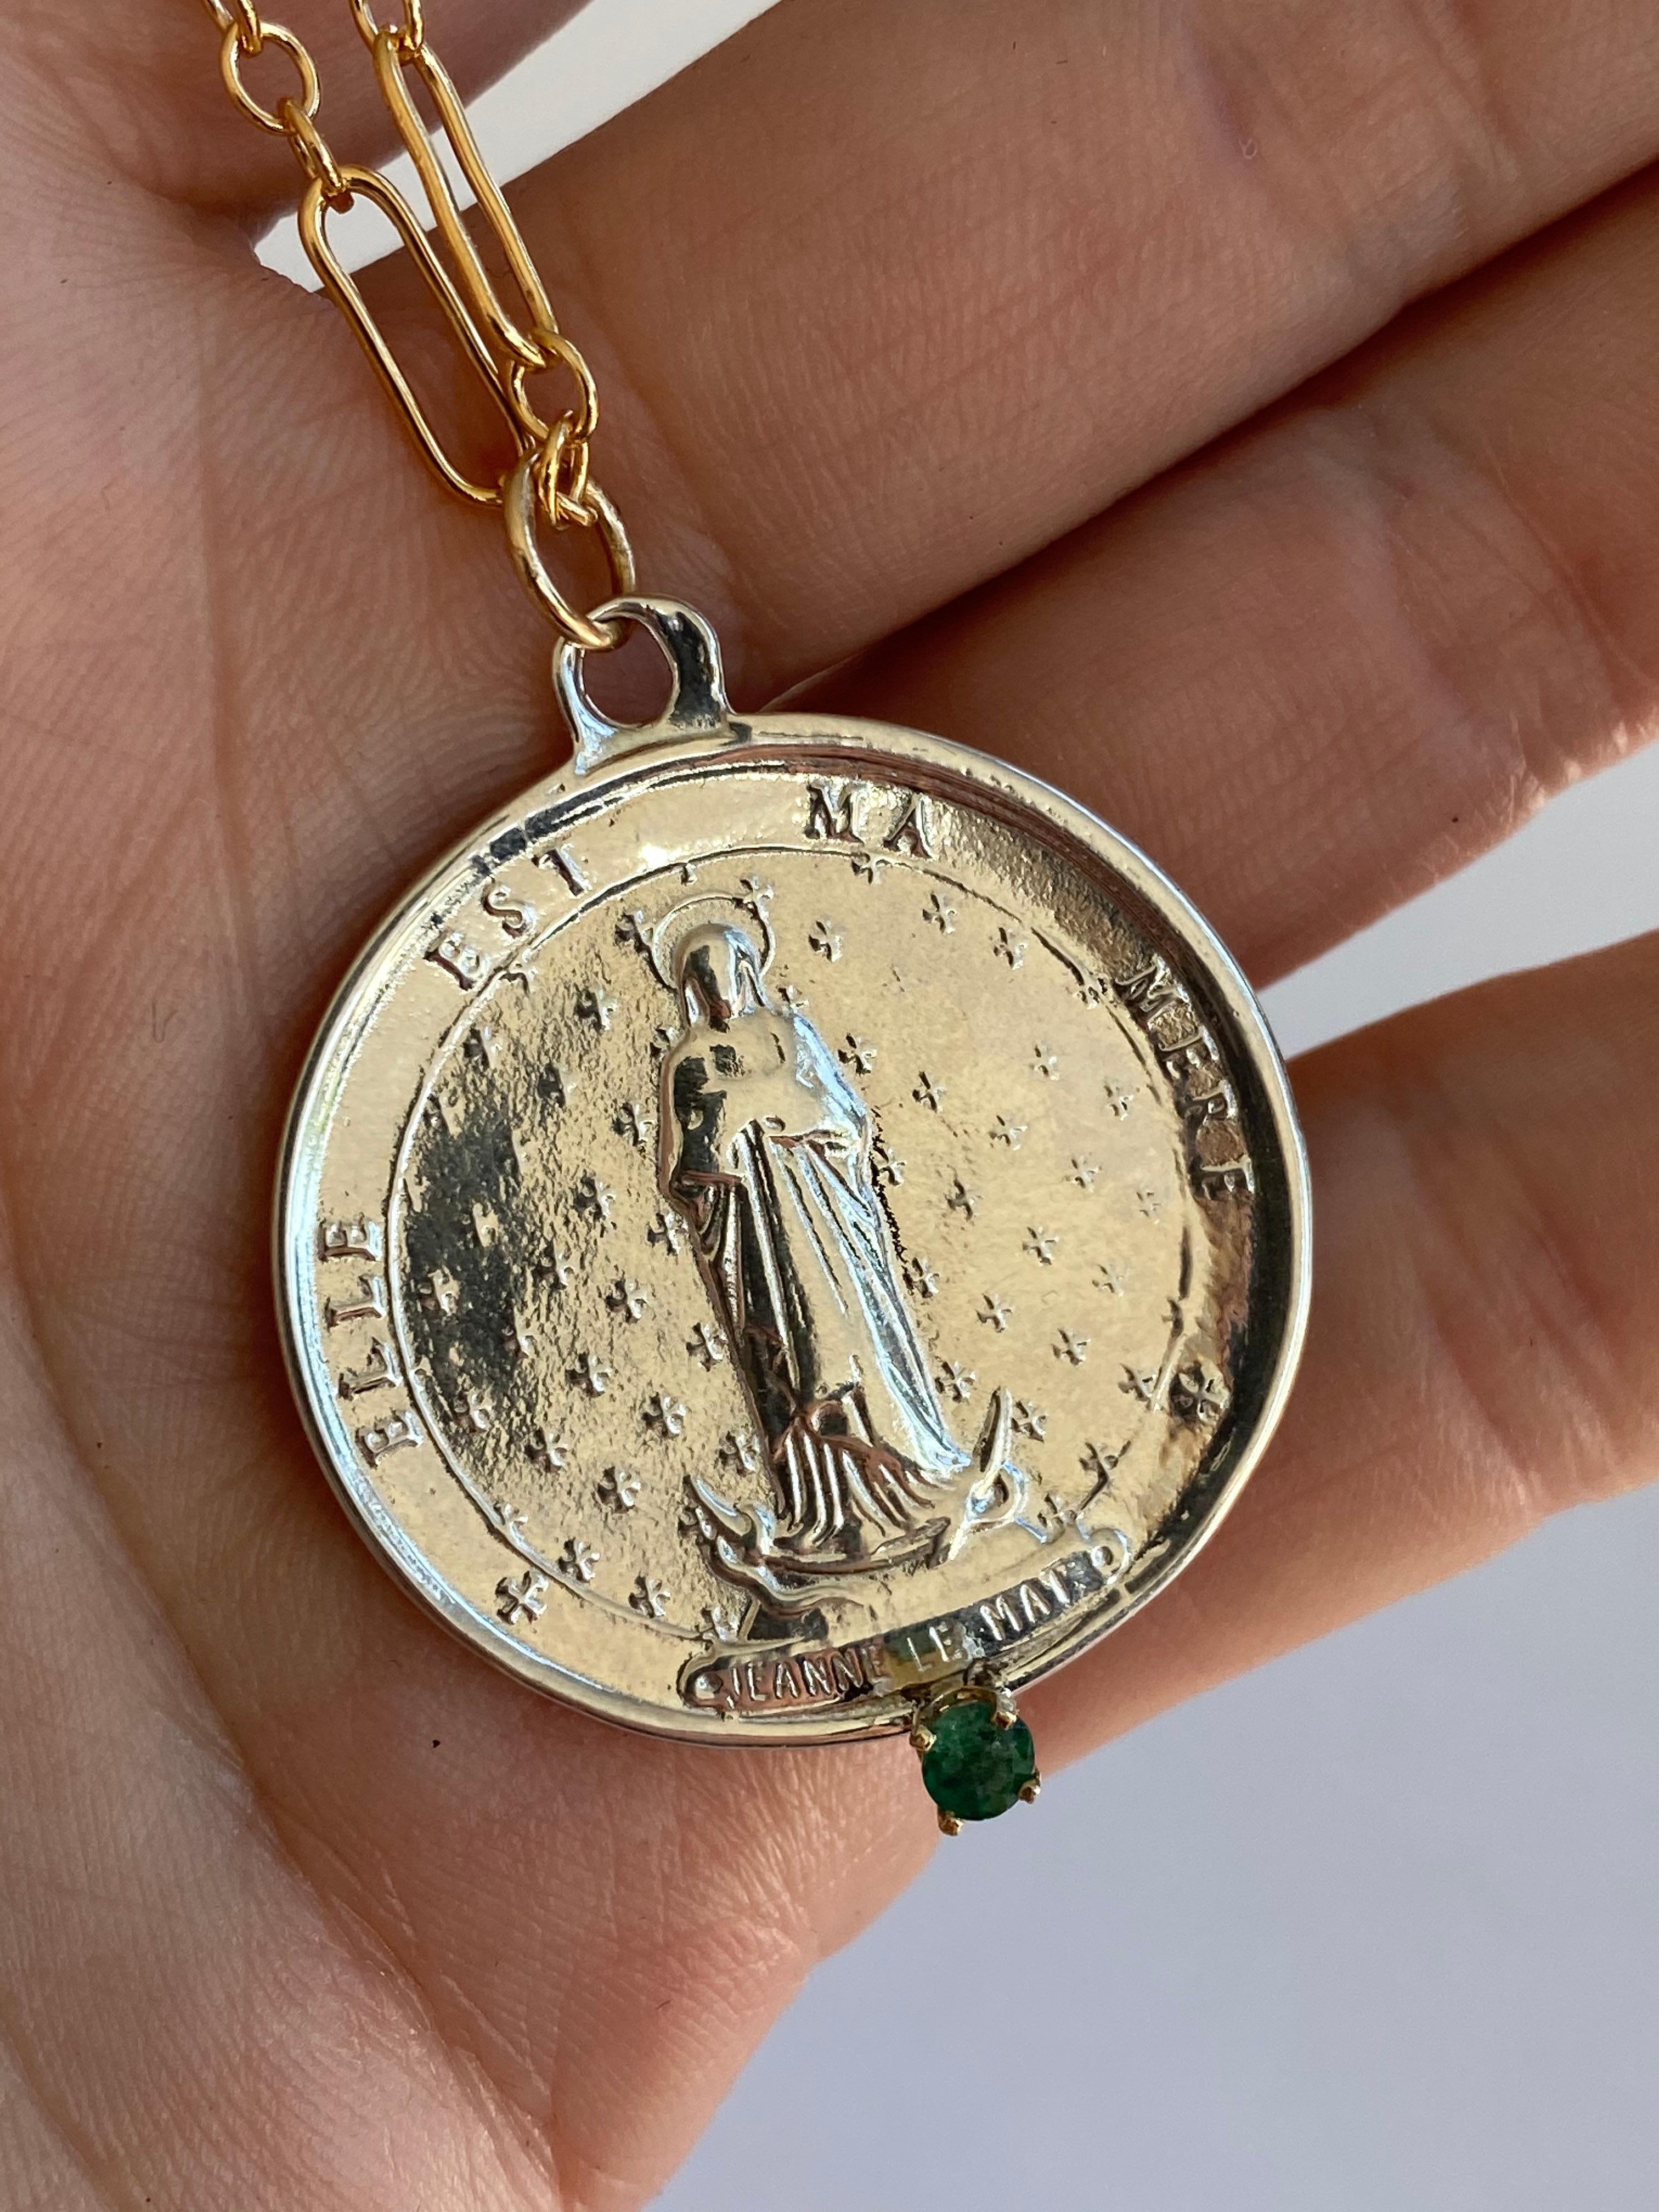 Smaragd Heilige Medaille Münze Silber Jeanne Le Mat Halskette Gold gefüllt Kette J DAUPHIN

Exklusives Stück mit einer runden Silbermedaille mit der französischen Heiligen Jeanne Le Mat und einem Smaragd in einem Goldzacken, der an einer